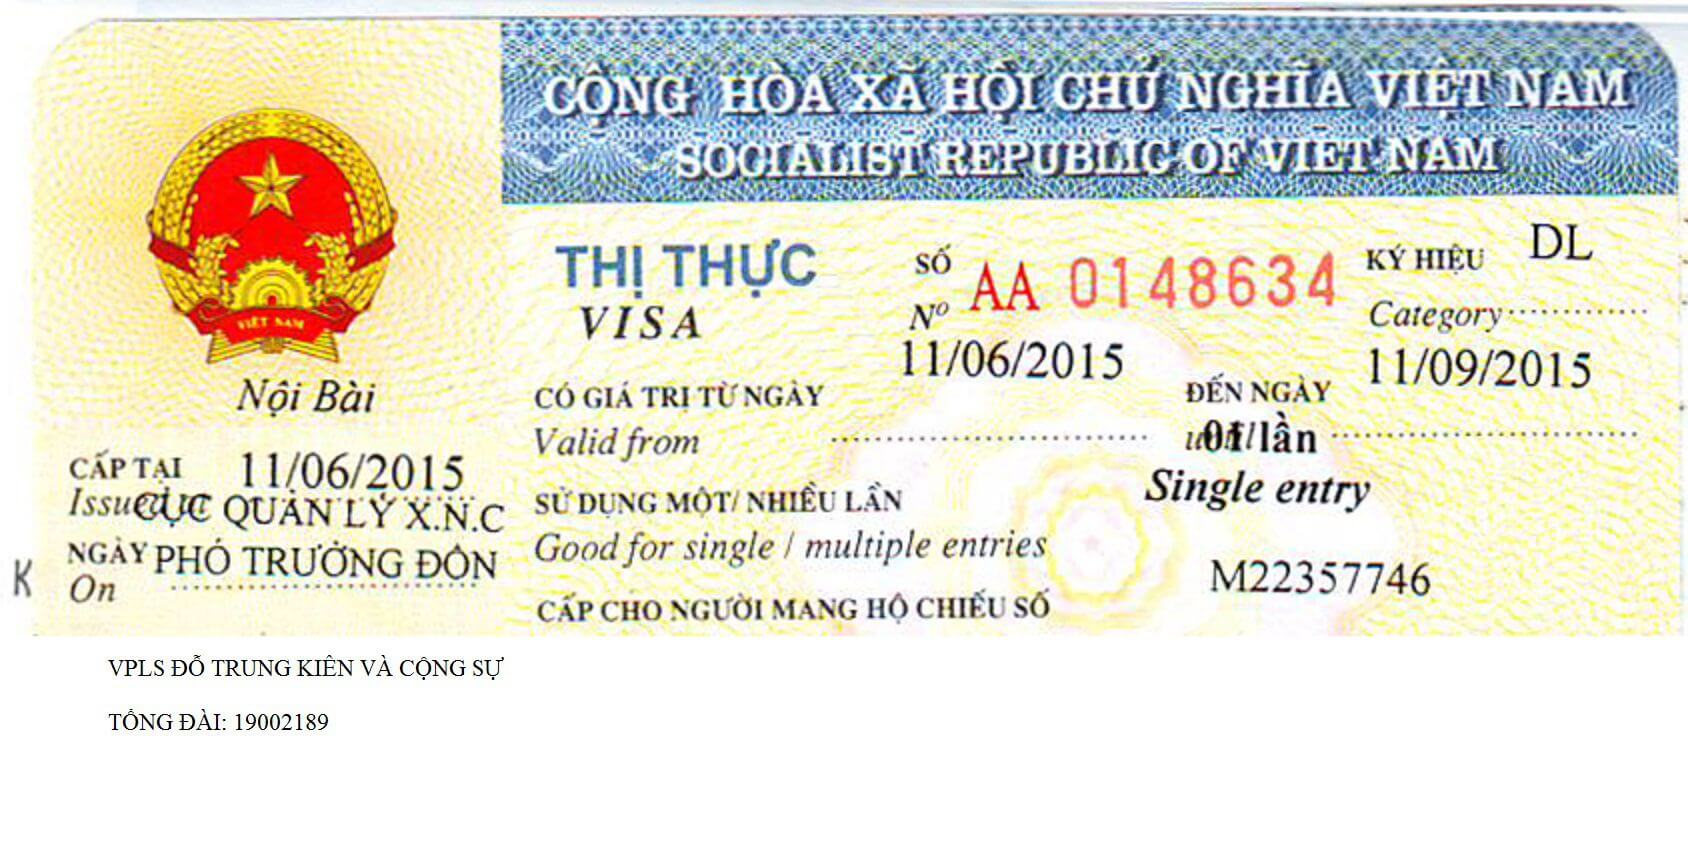 Thủ tục xin visa vào Việt Nam cho người nước ngoài tại Thanh Hóa